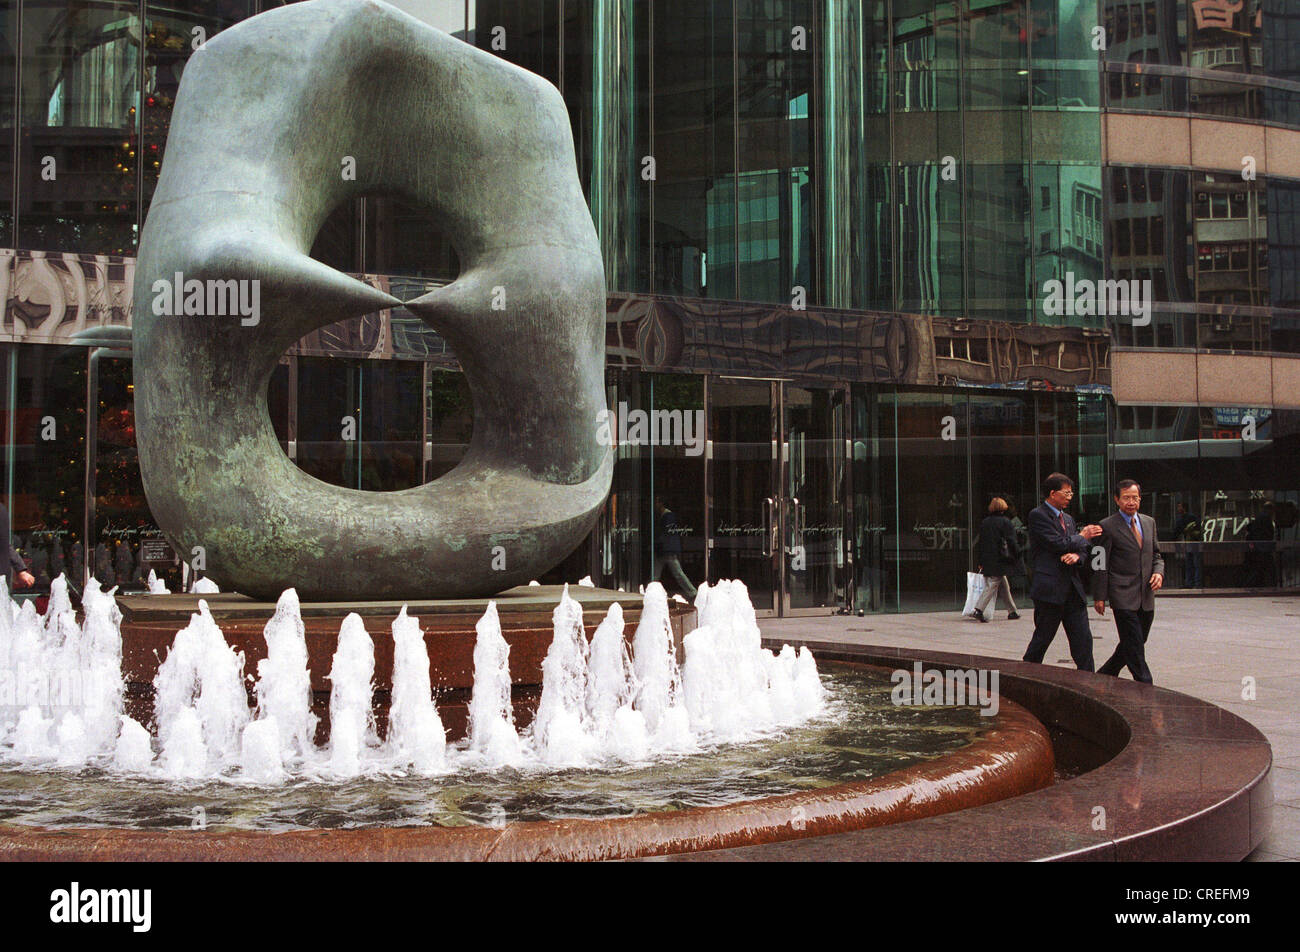 La sculpture à l'entrée principale de la Bourse de Hong Kong Banque D'Images